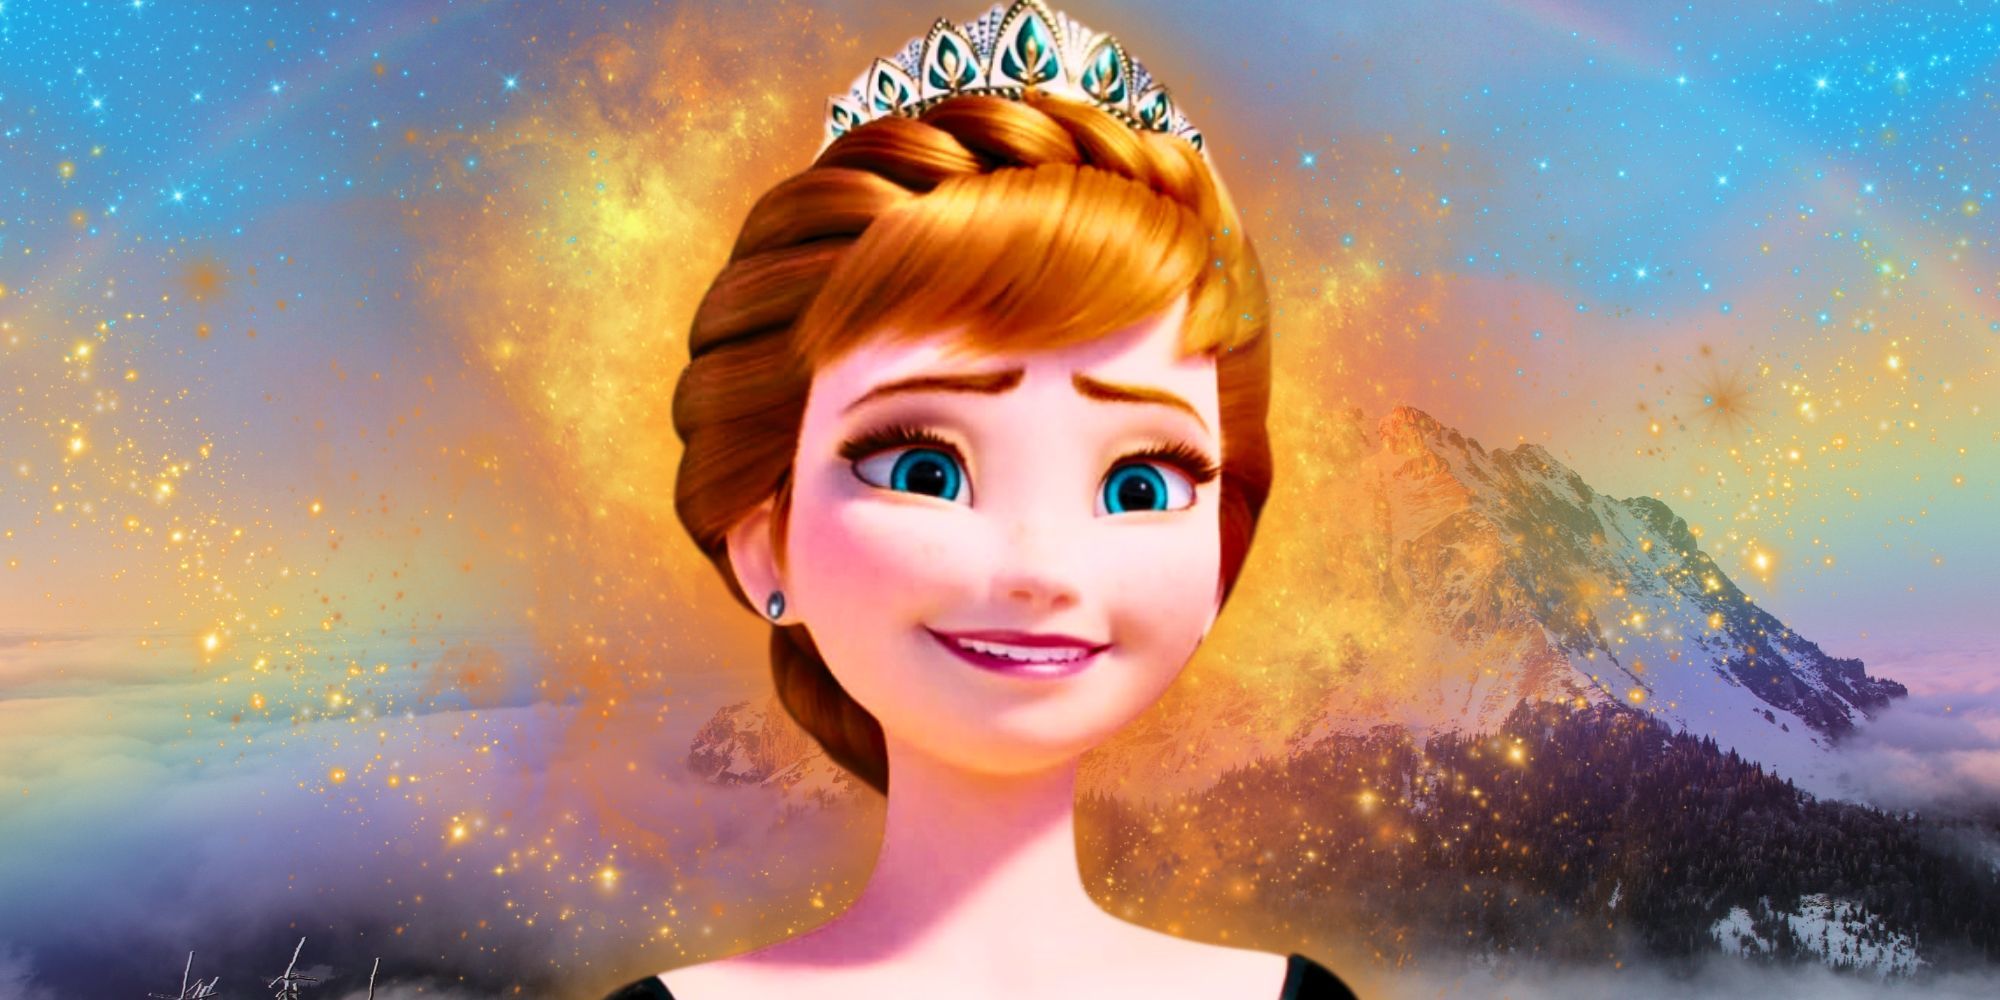 Queen Anna in Disney's Frozen 2.